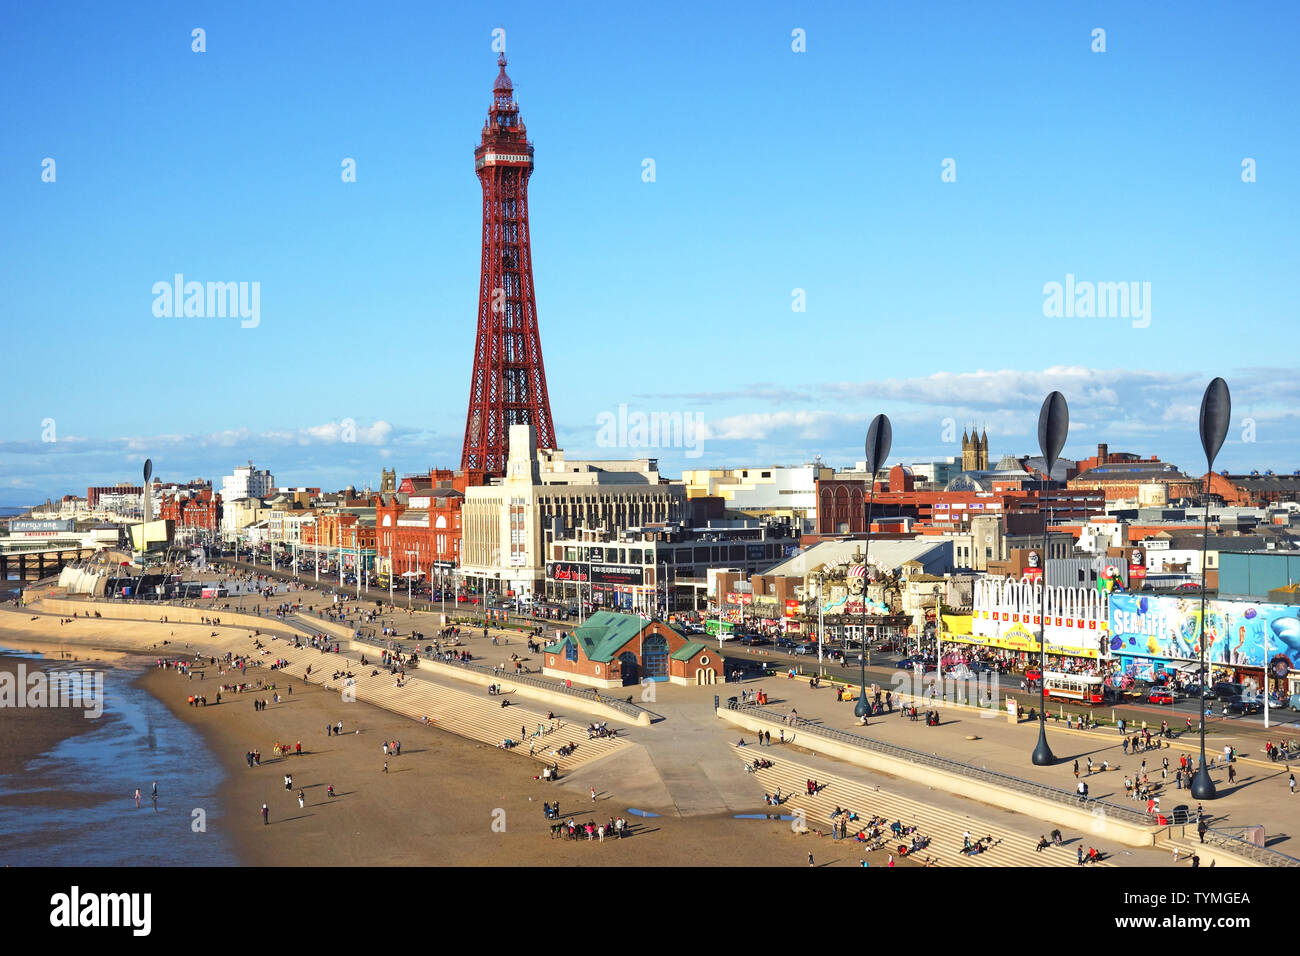 La ciudad costera de Blackpool en el noroeste de Inglaterra, Gran Bretaña, Reino Unido, Foto de stock